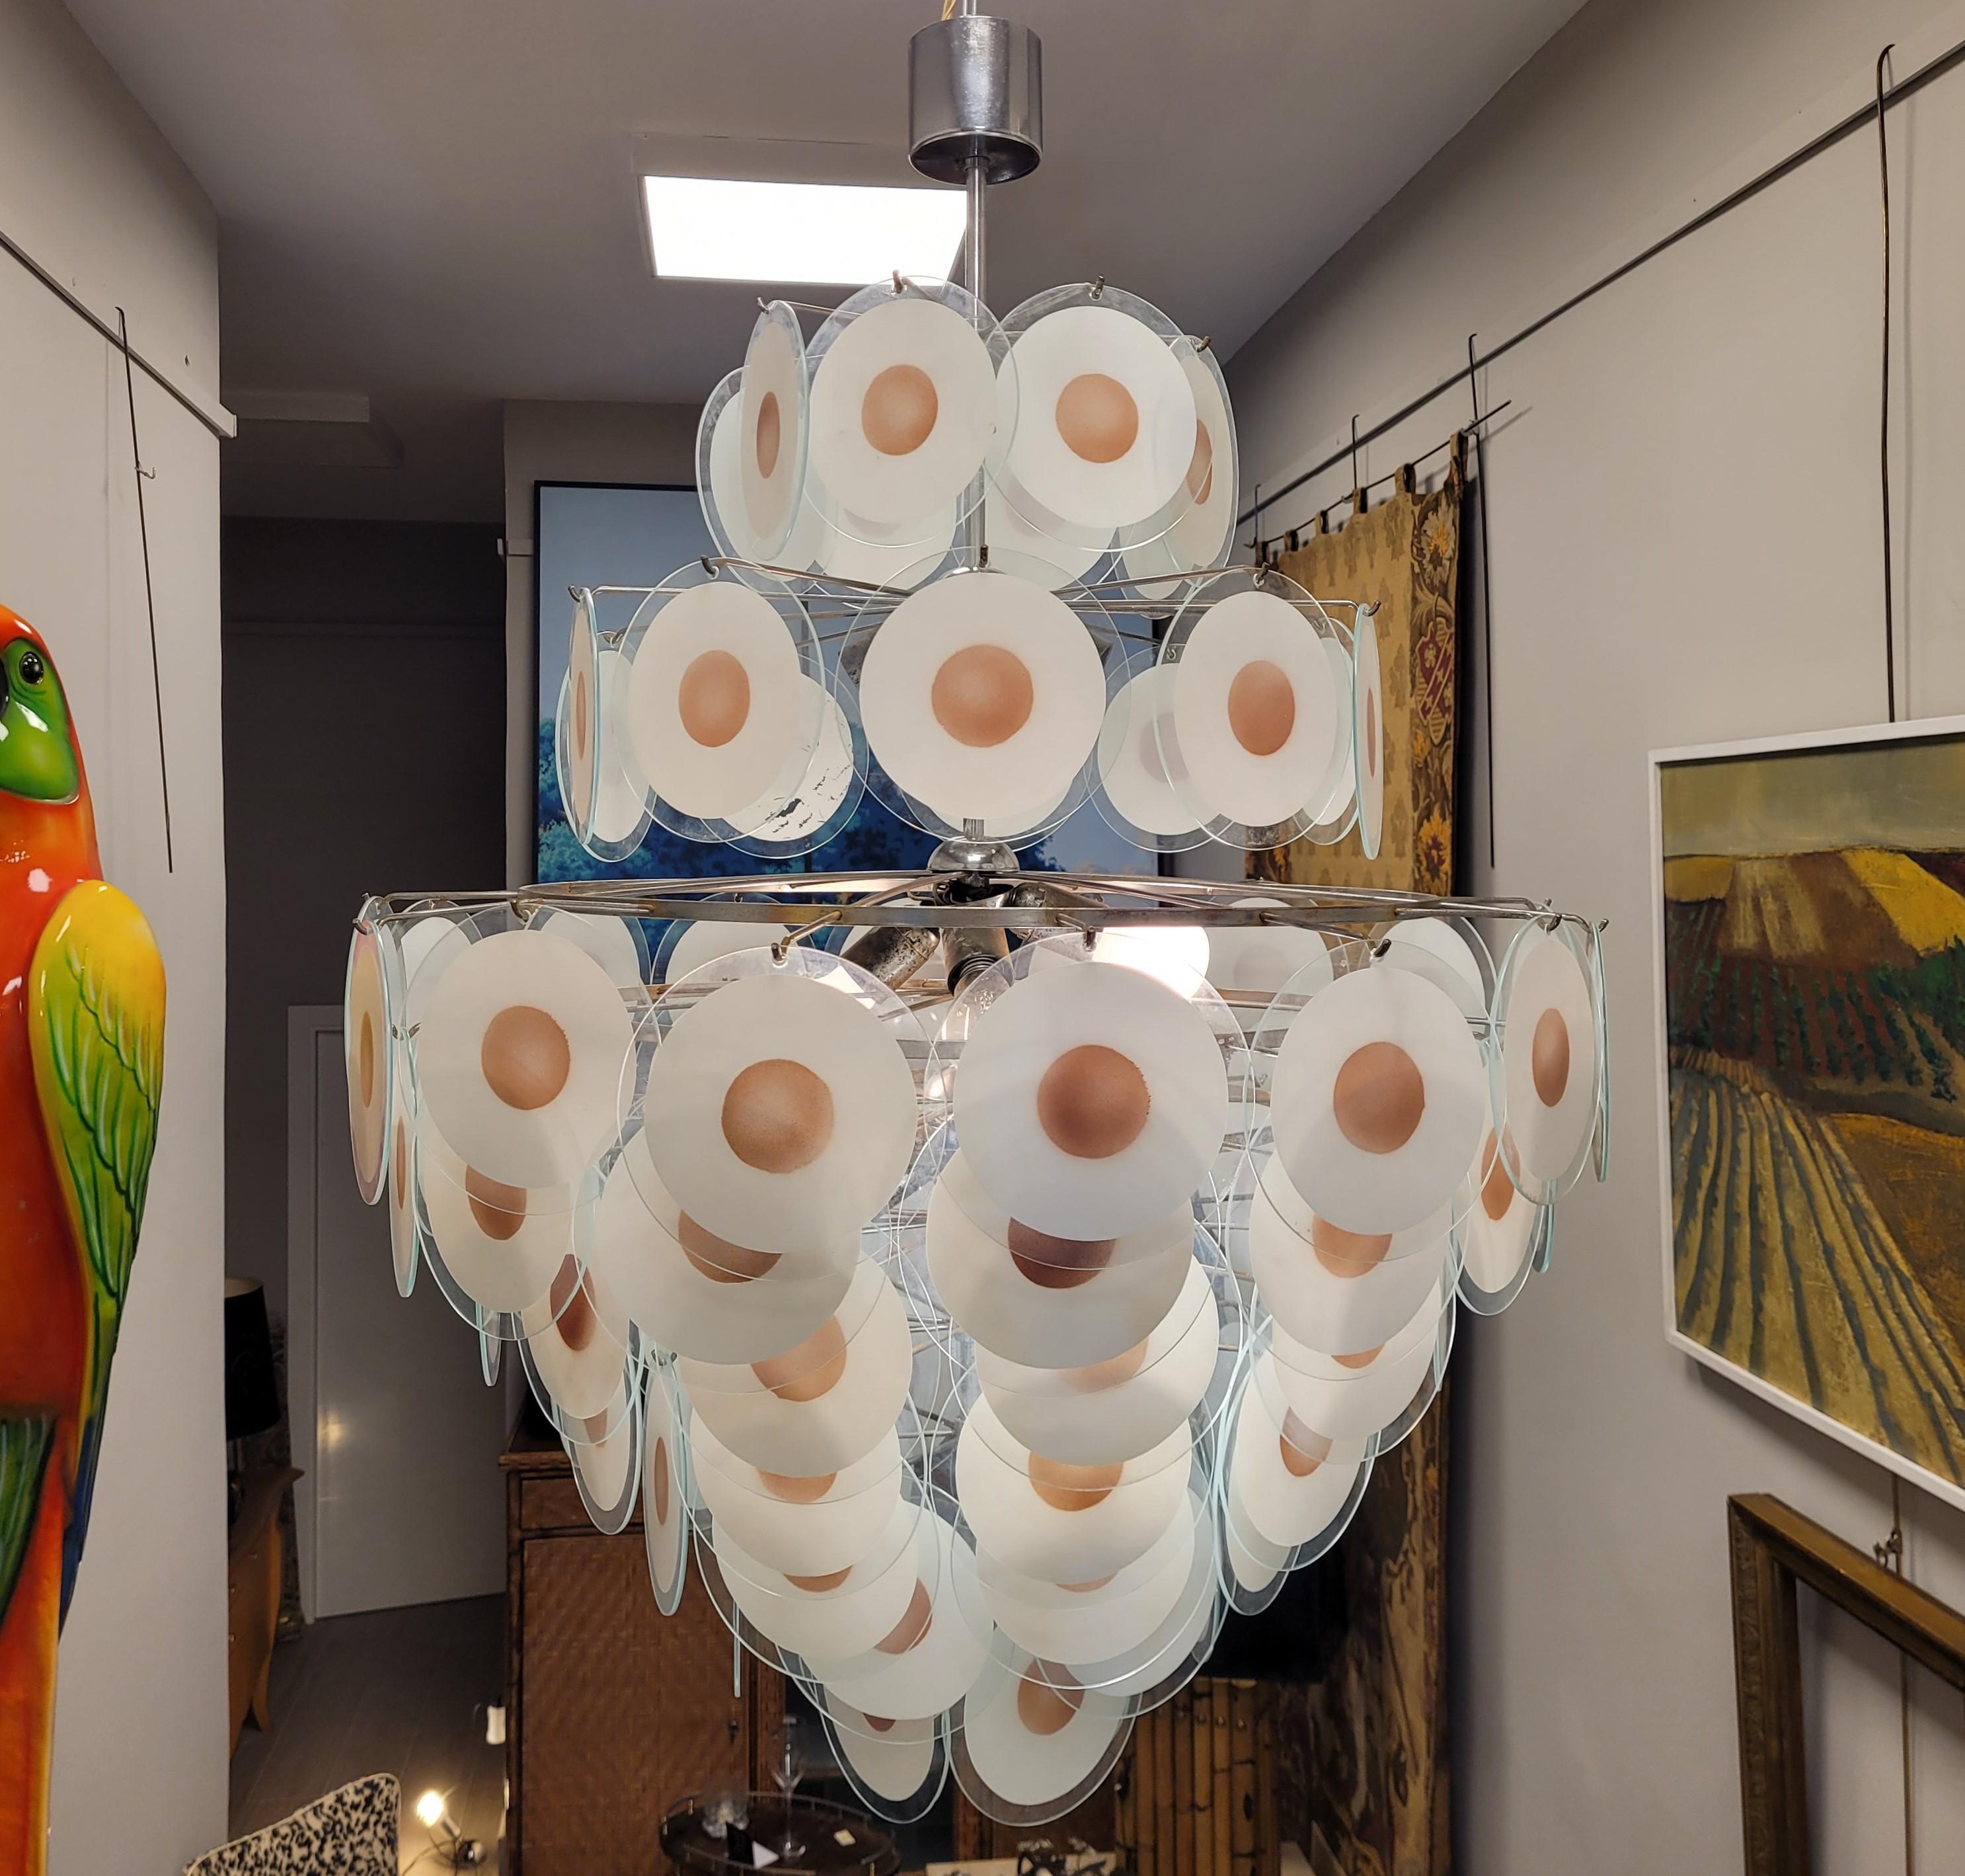 Erstaunliche und fantastische große kronleuchterartige Lampe, entworfen von Carlo Nason für das venezianische Haus Mazzega. Sie besteht aus einer Metallstruktur, an der unendlich viele weiße Murano-Glasscheiben mit einem lachsfarbenen Kreis mit